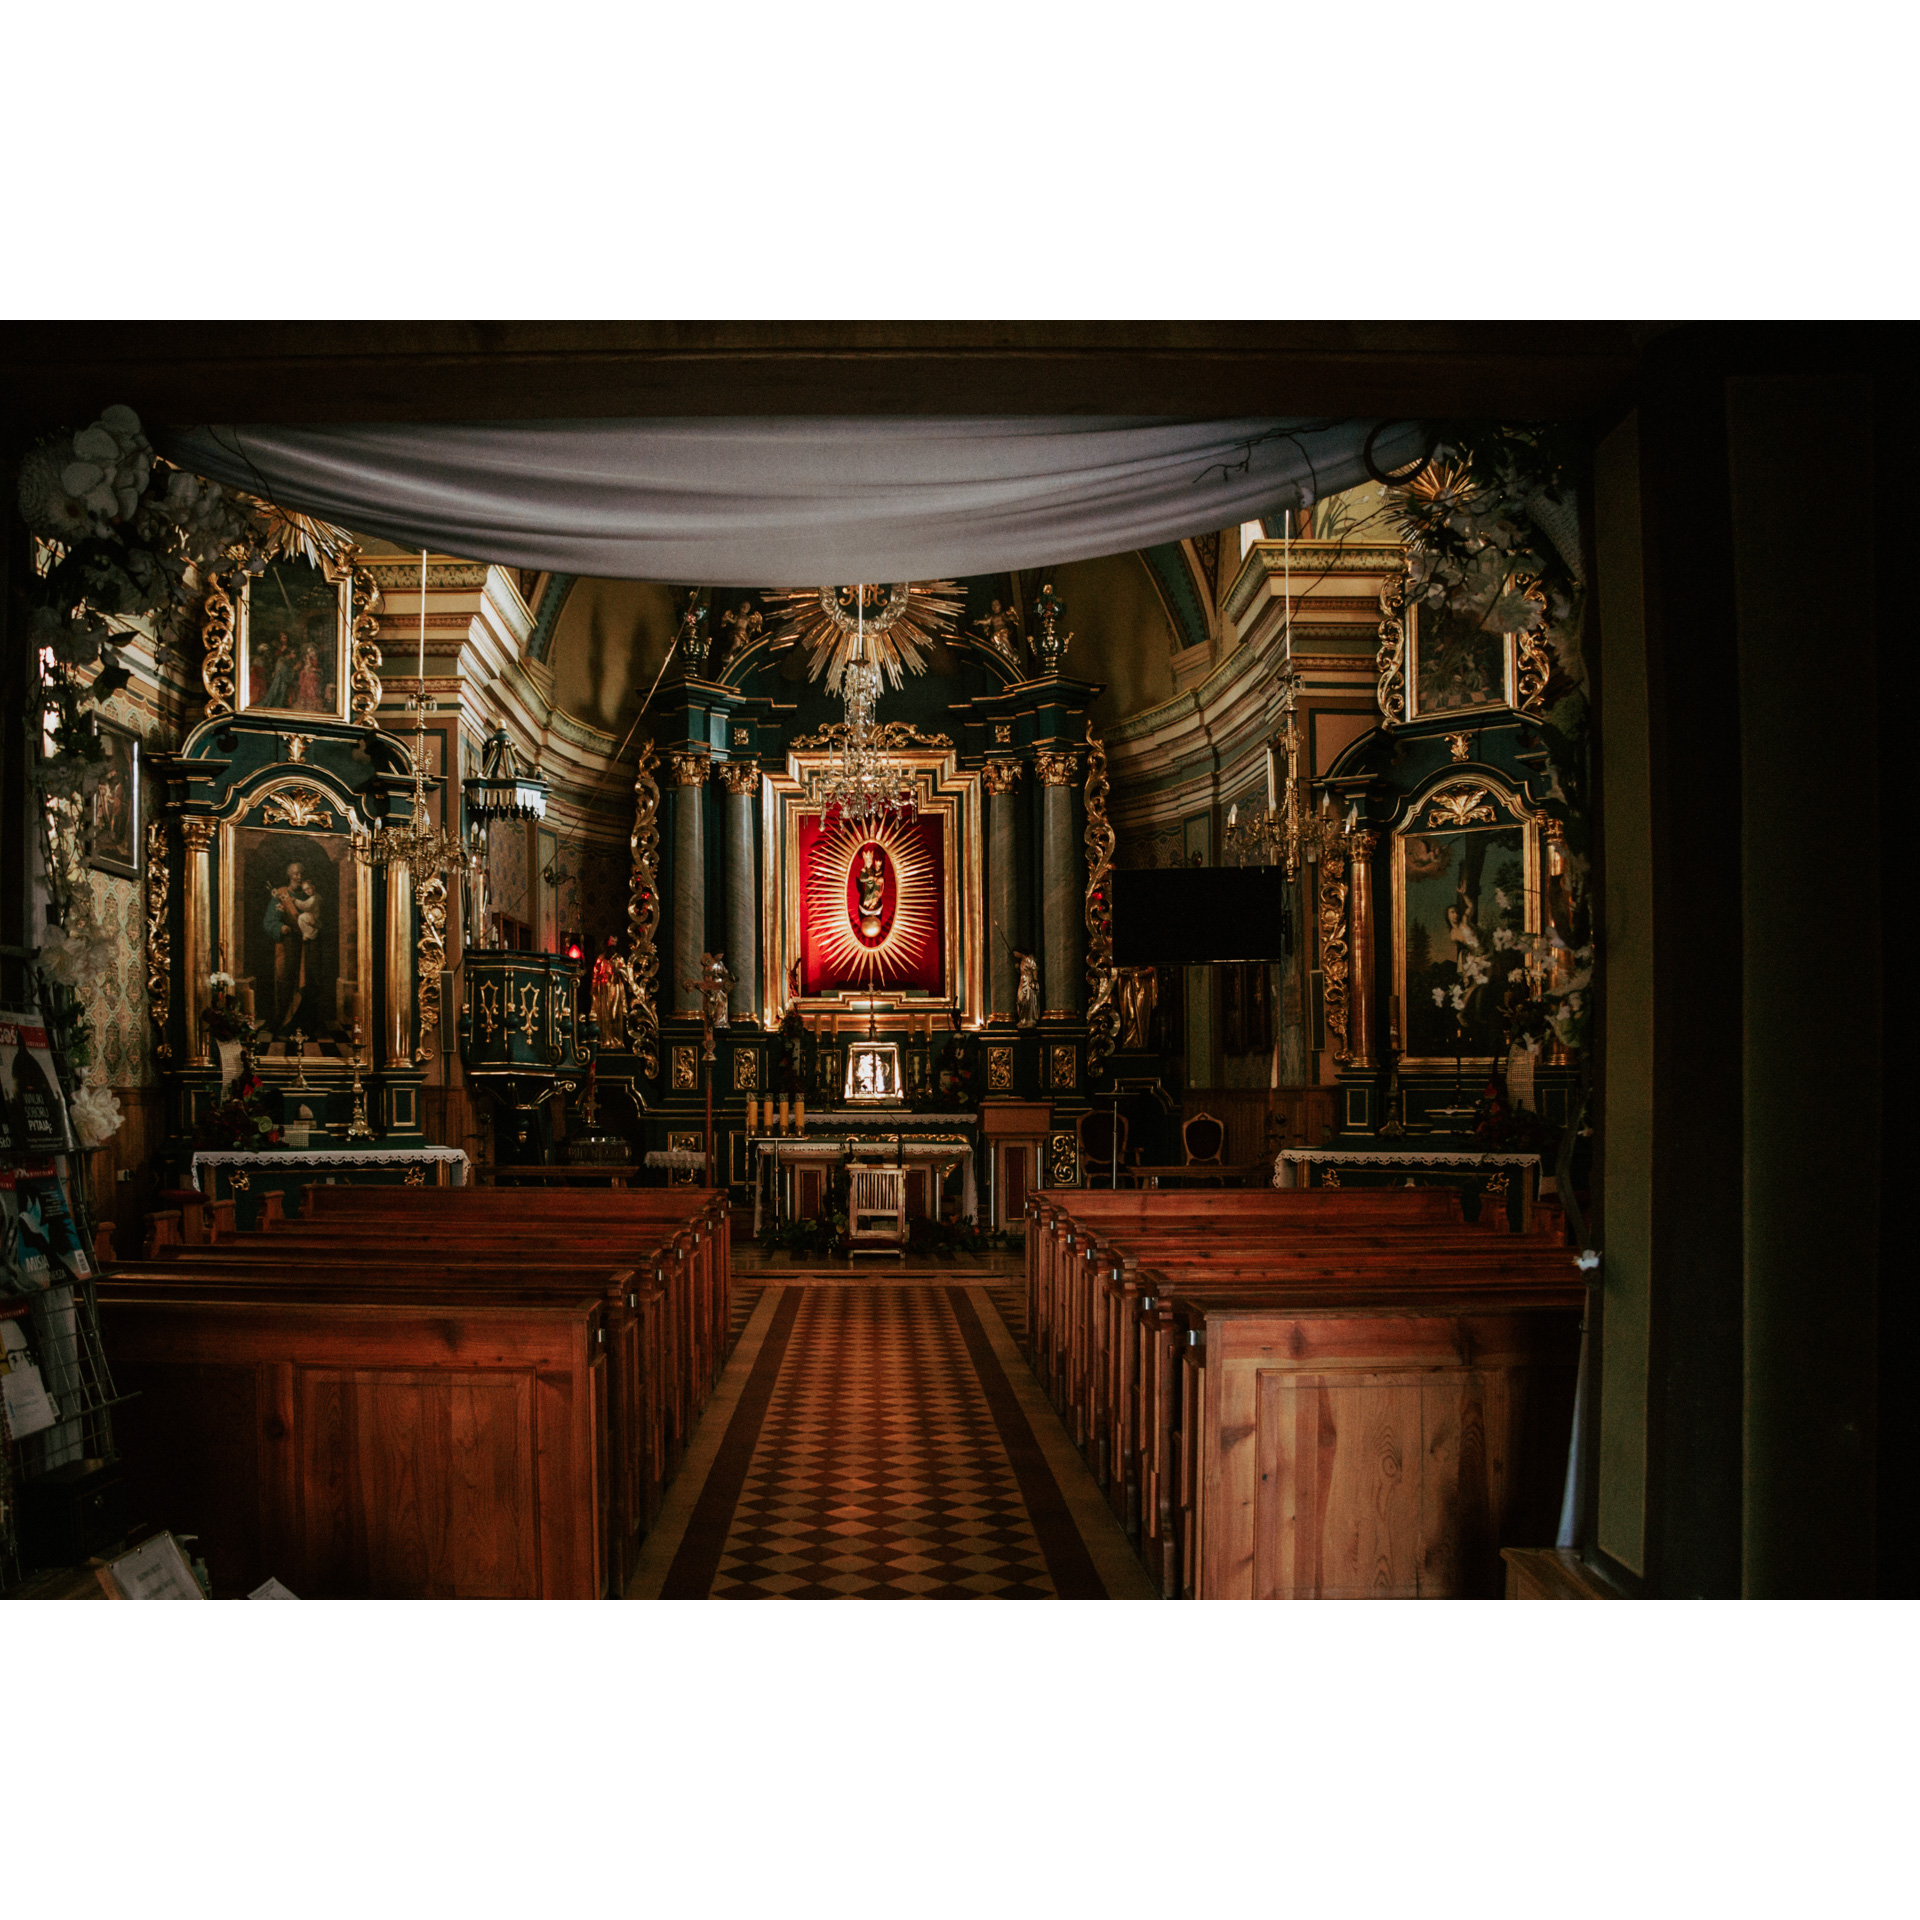 Bogato zdobiony ołtarz sanktuarium - w centralnej części niewielka figura Matki Boskiej z Dzieciątkiem otoczona złotym zdobieniem i ramą, po bokach obrazy świętych zdobione polichromią, przed ołtarzem drewniane ławki dla wiernych